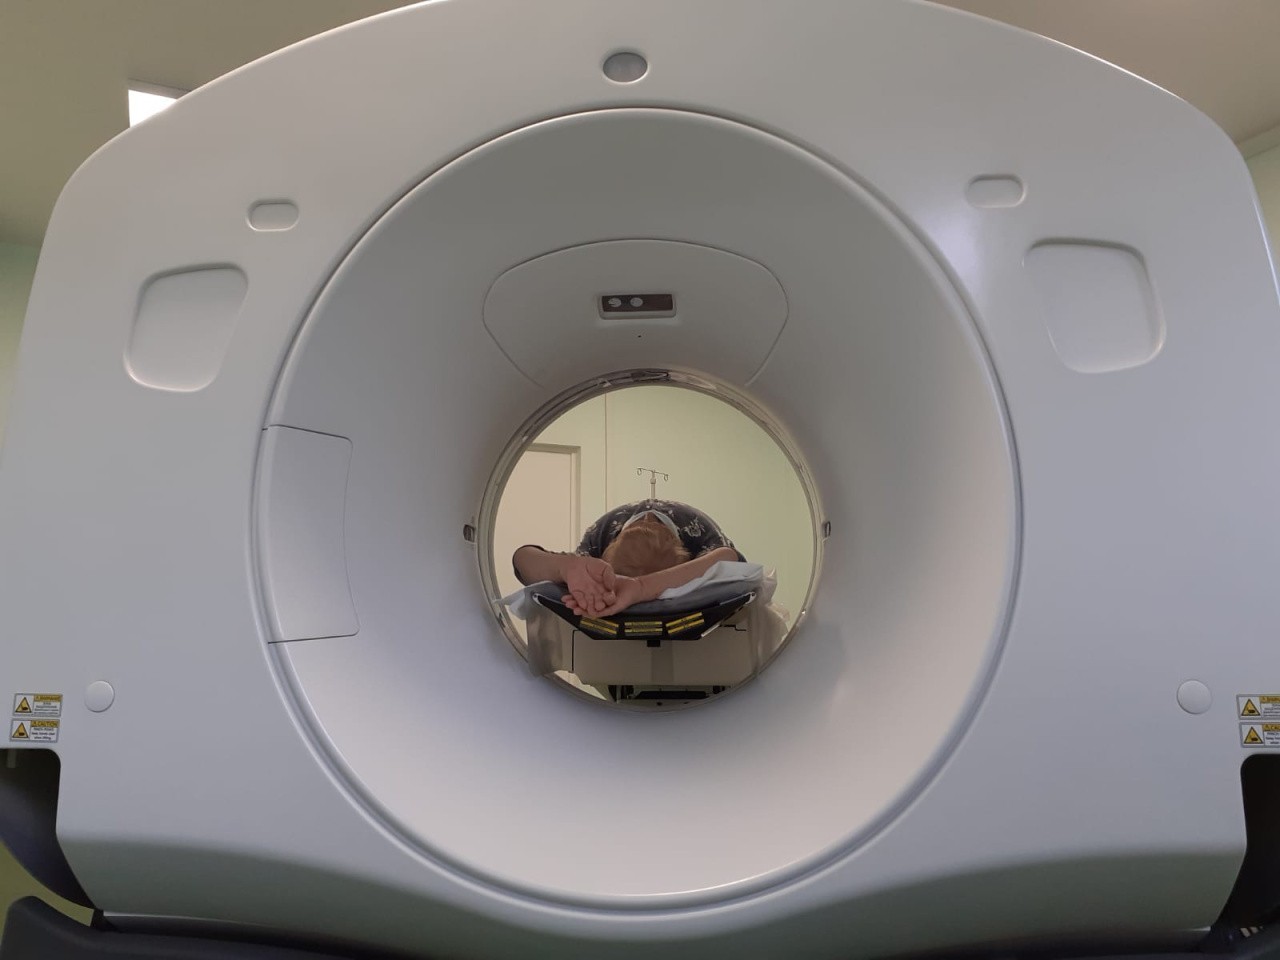 В этом году в больницах Зеленоградска и Черняховска появятся компьютерные томографы